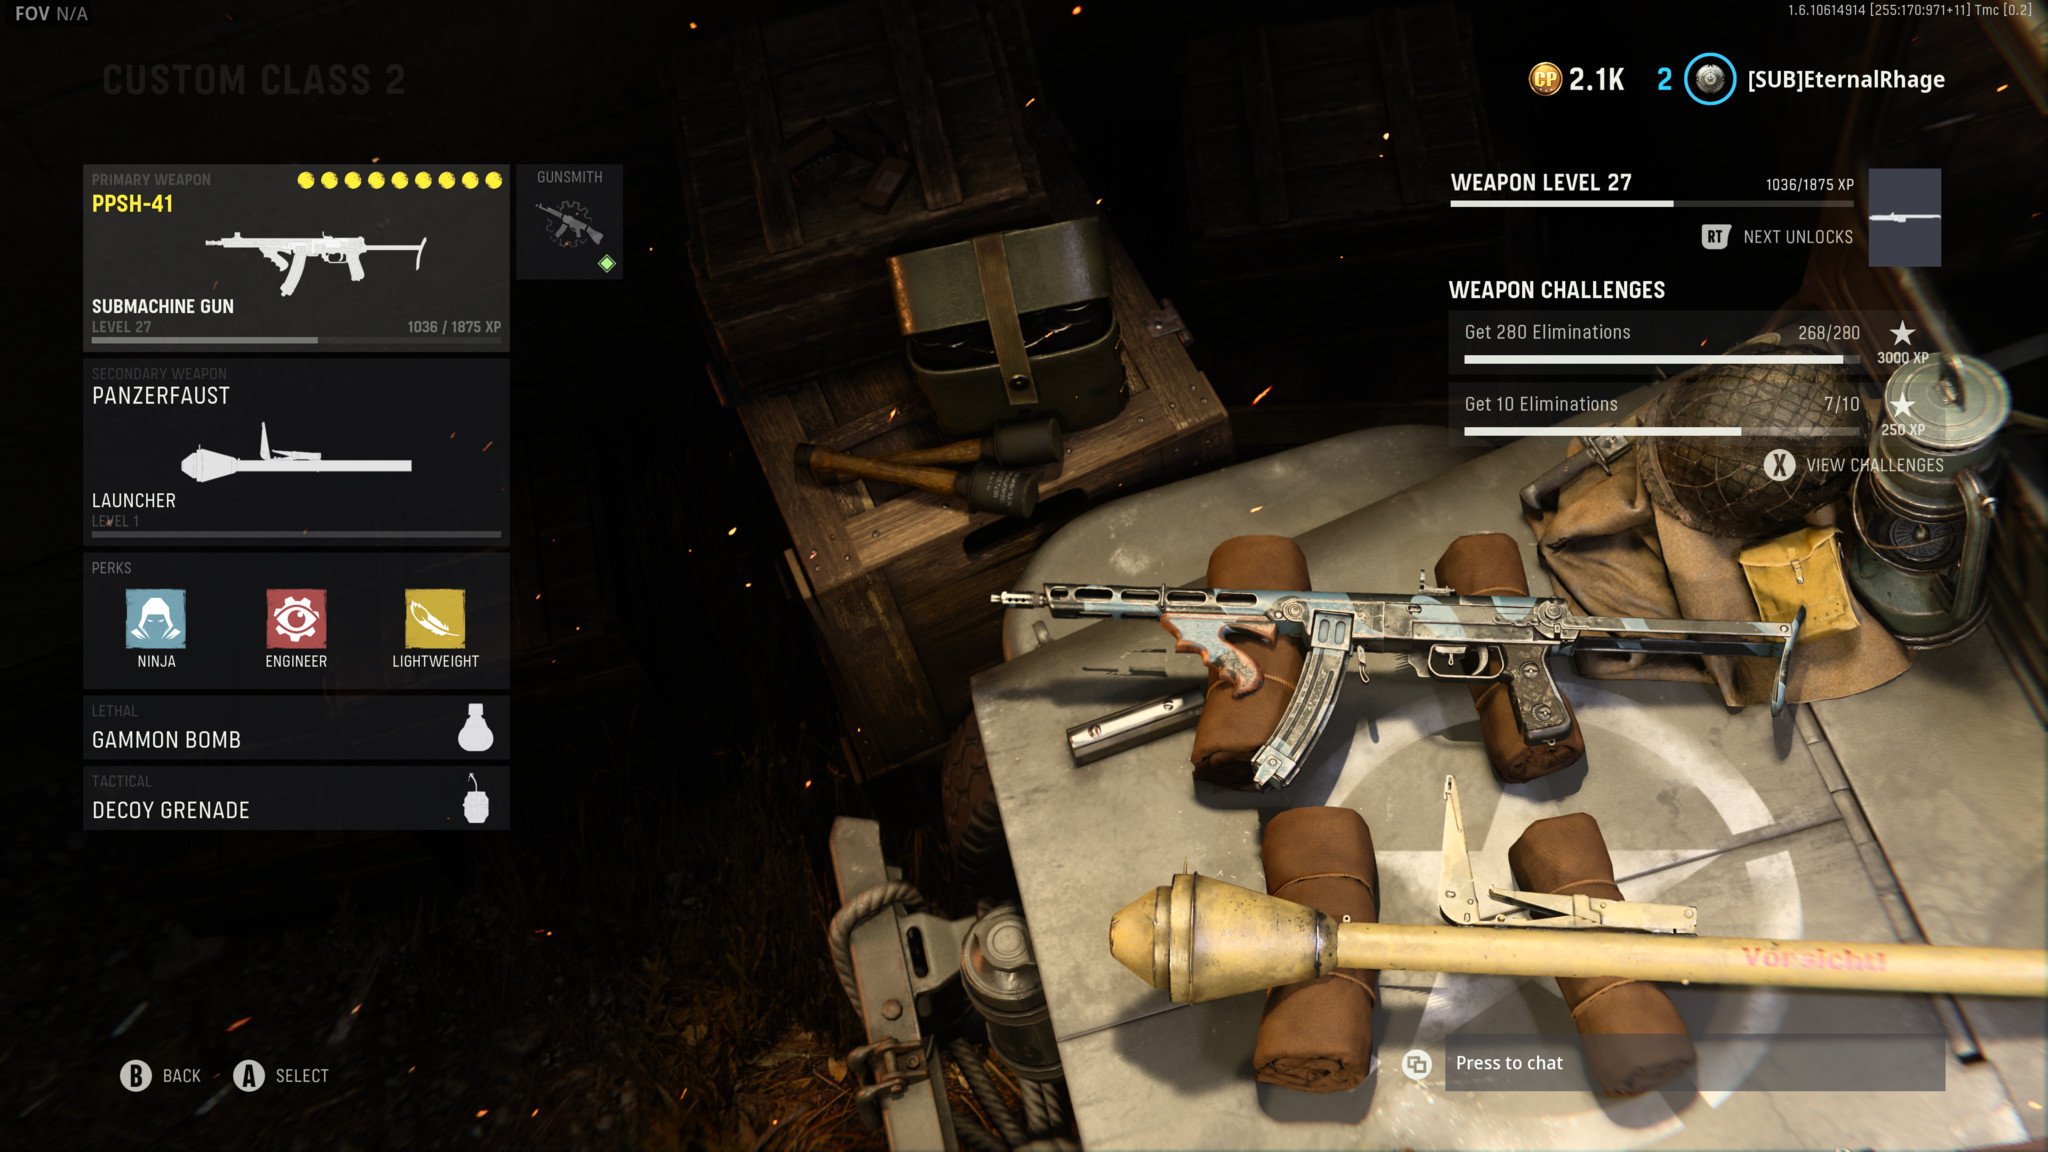 Carga Smg de arma de vanguarda Call Of Duty